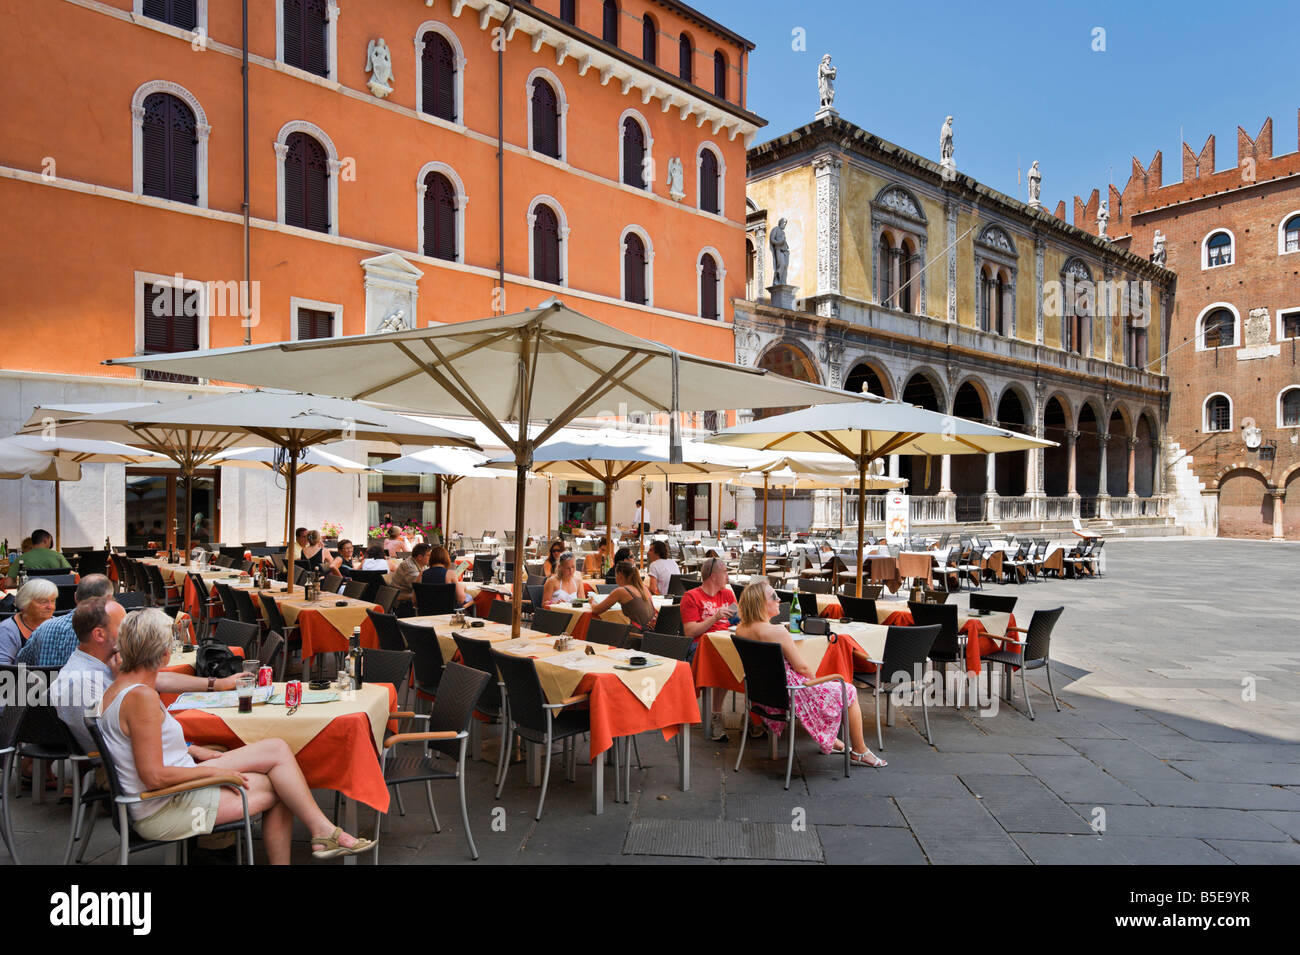 Caffe Dante restaurant in Piazza dei Signori (with the Loggia del Consiglio and Palazzo degli Scaligeri behind), Verona, Italy Stock Photo